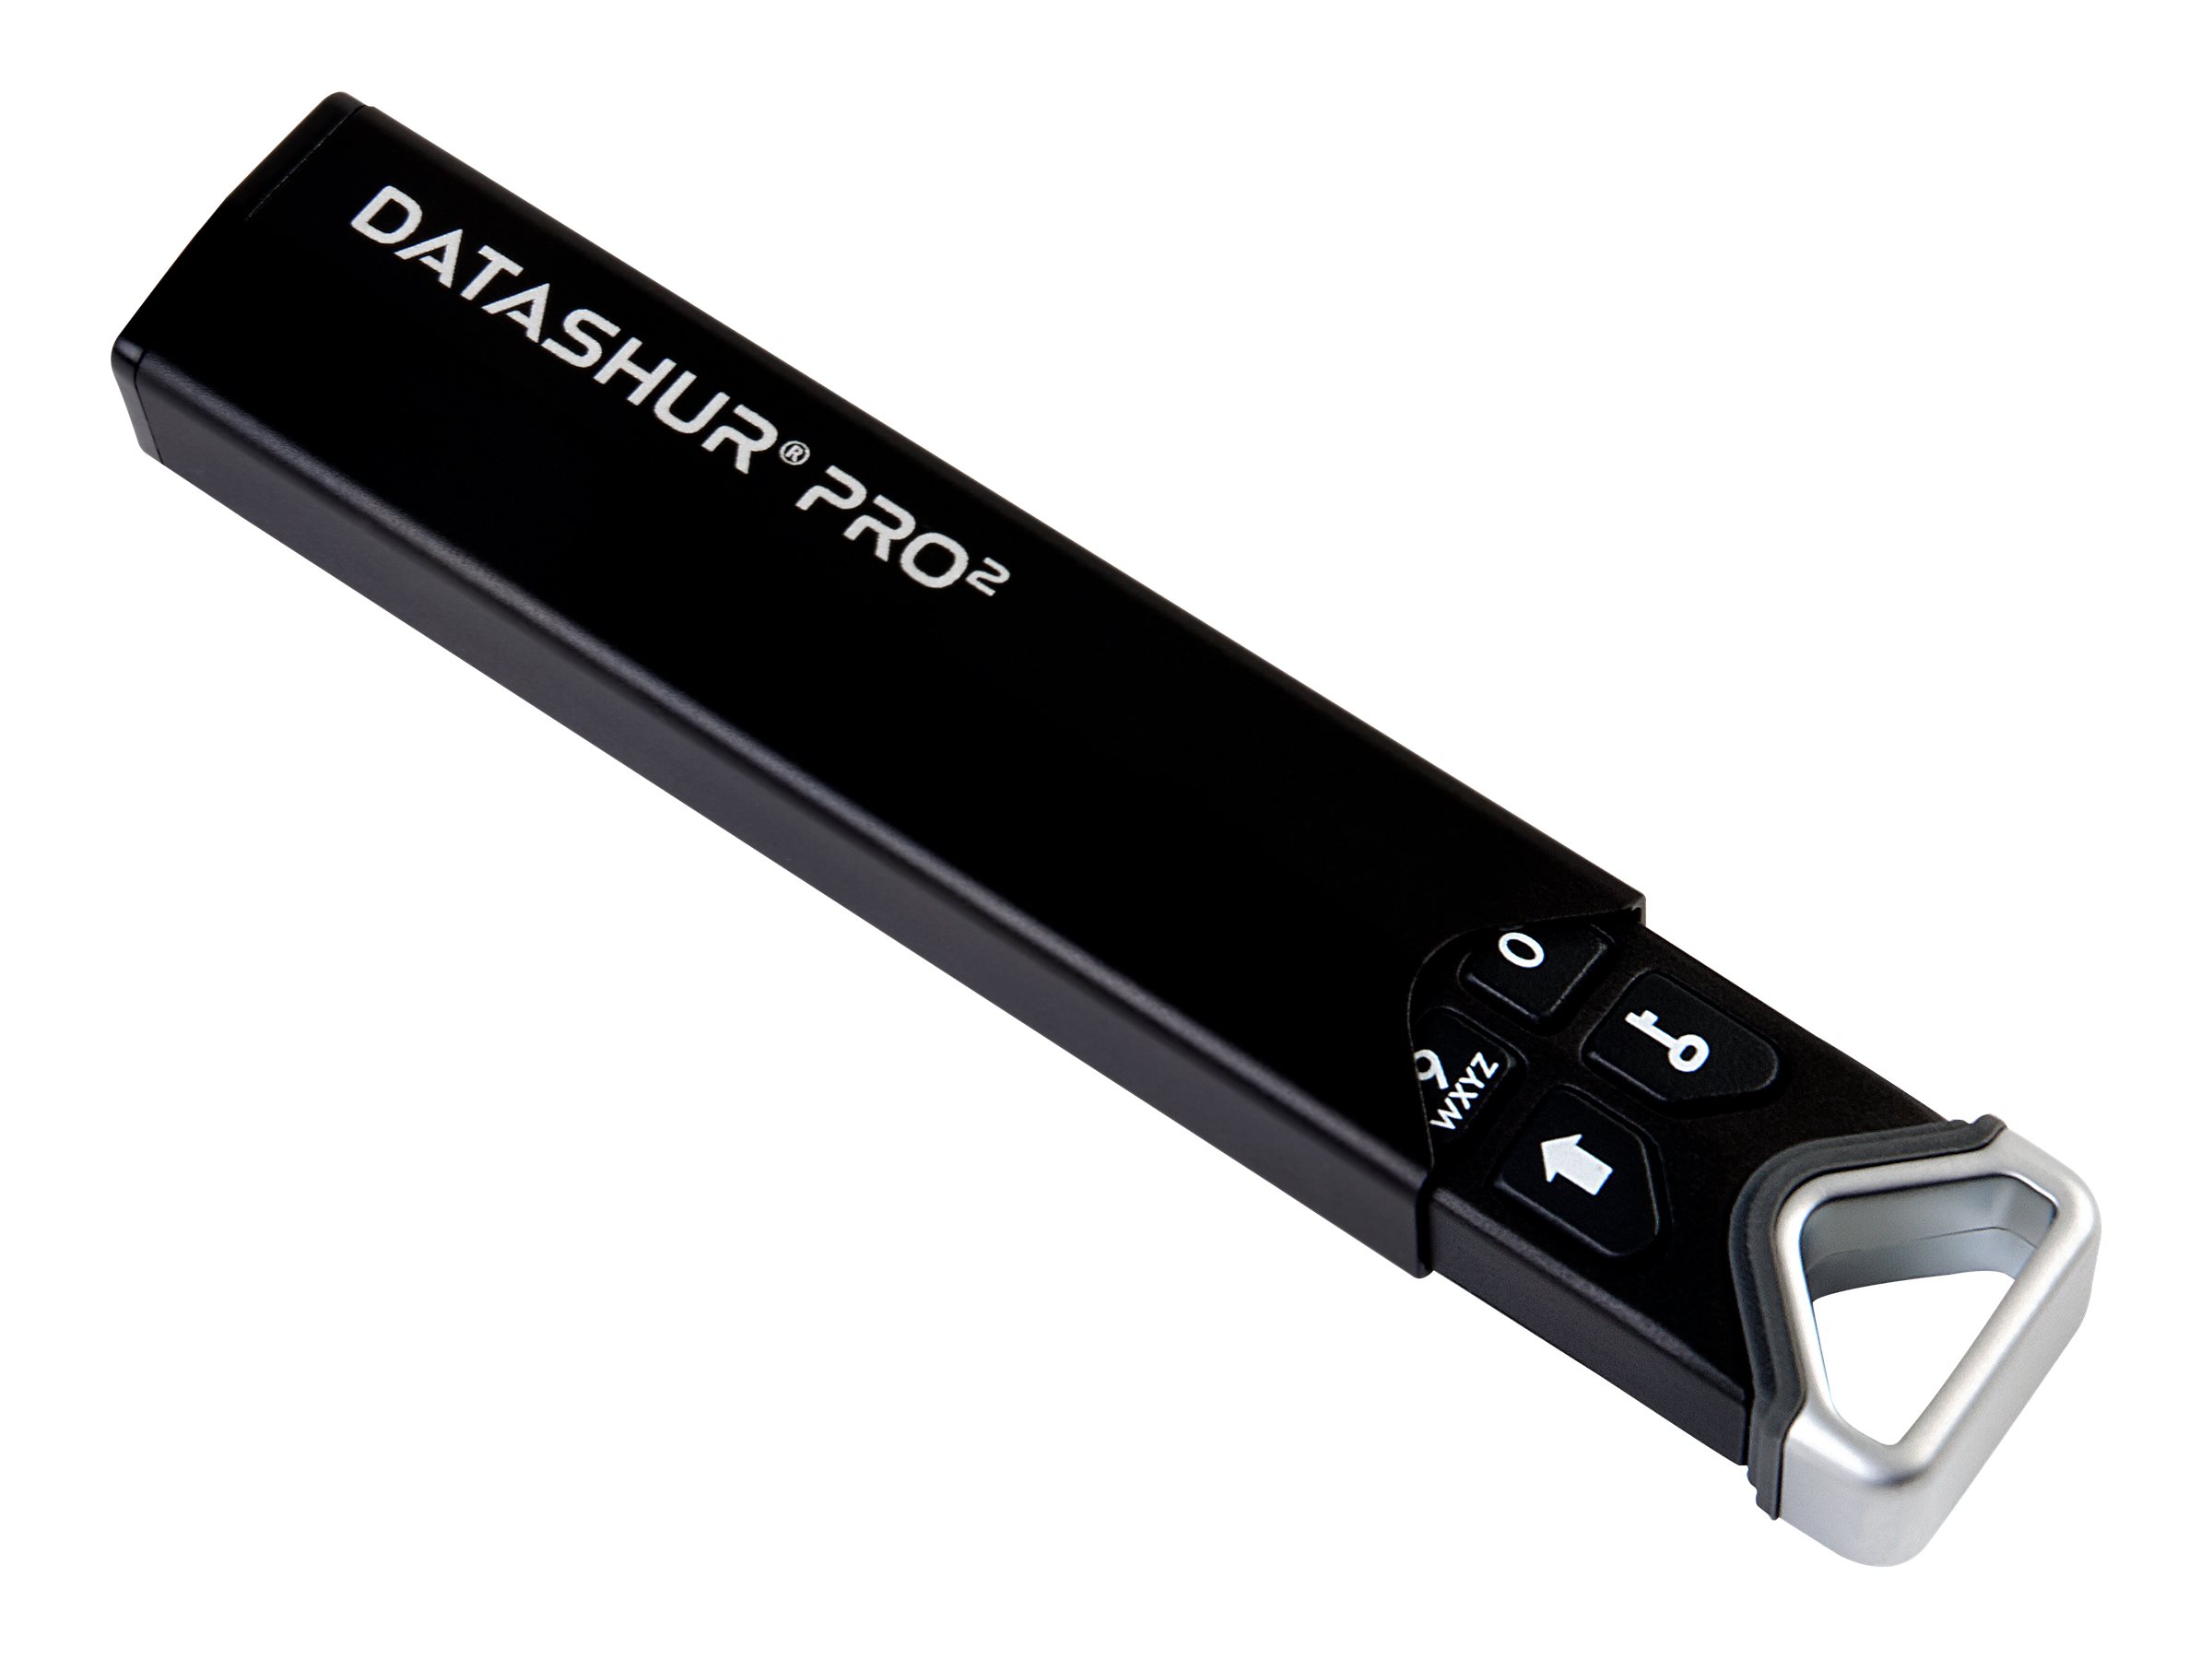 iStorage datAshur Pro2 - USB-Flash-Laufwerk - verschlsselt - 128 GB - USB 3.2 Gen 1 - FIPS 140-2 Level 3